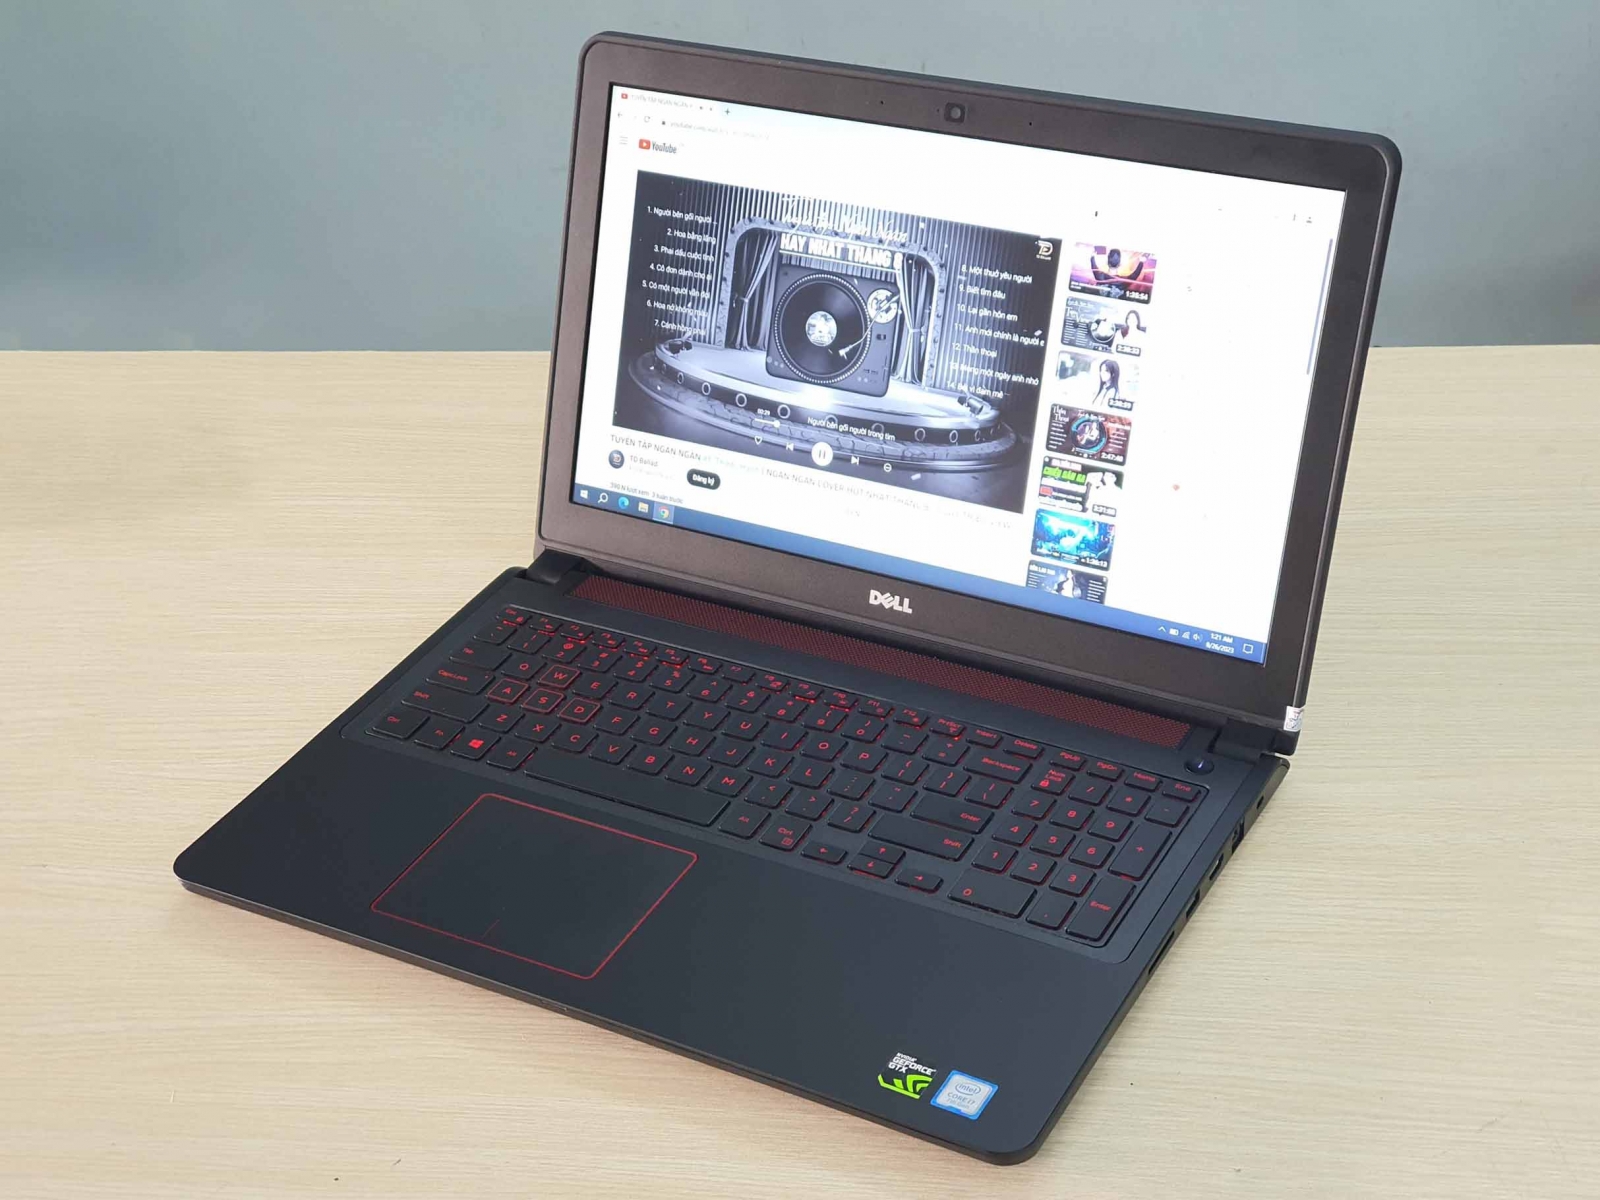 Hình ảnh laptop gaming dell inspiron i7-7700HQ ram 8g ssd 128g vga gtx 1050 màn hình 15.6 inch fhd